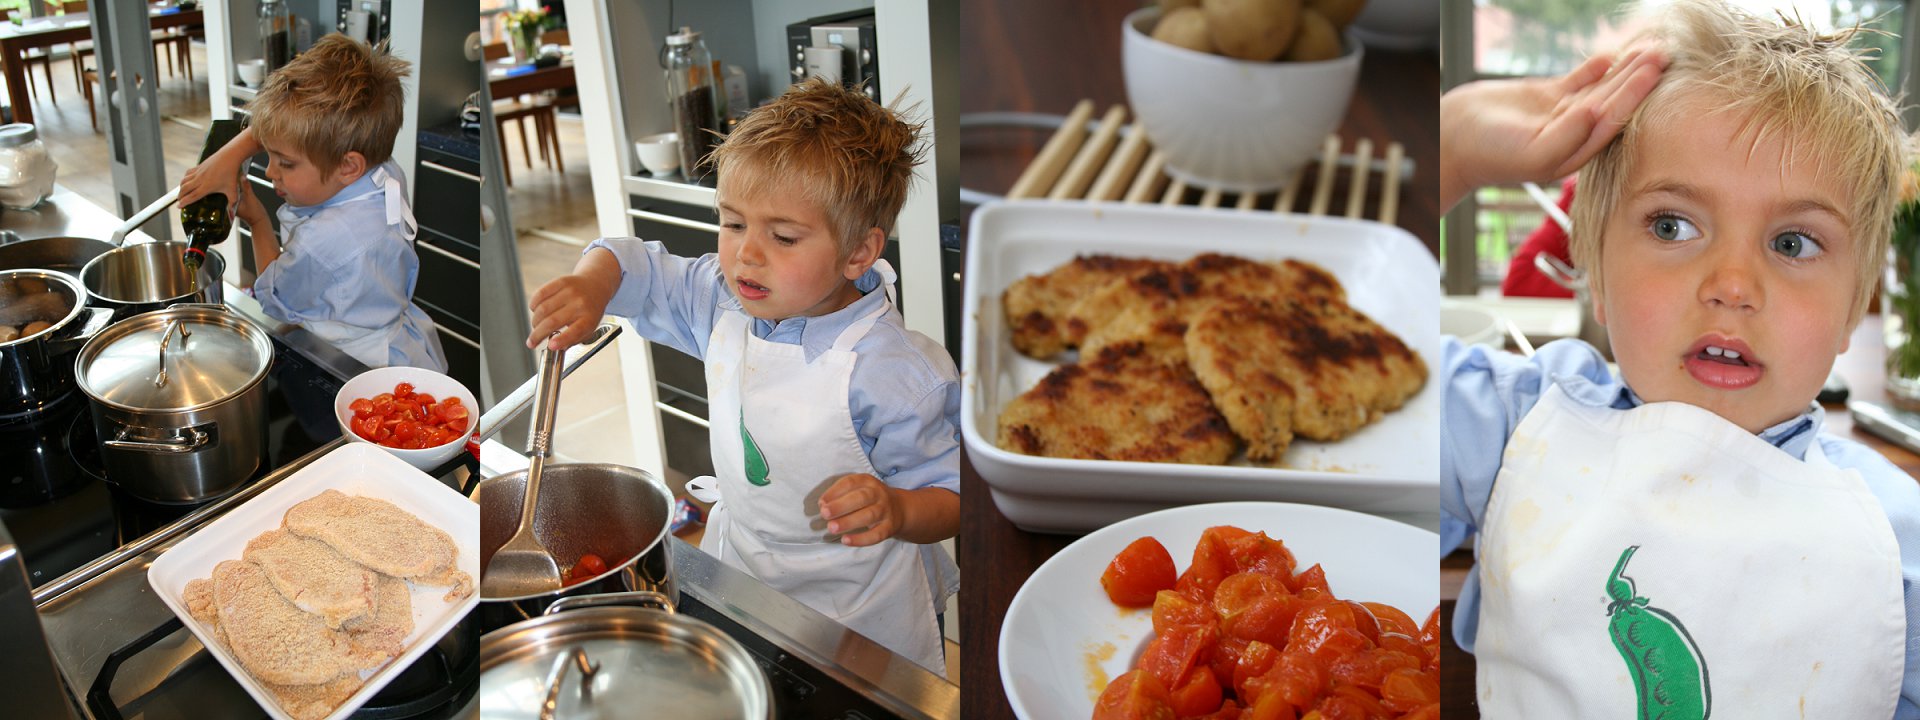 Kinder auf der Hochzeit sinnvoll beschäftigen: gemeinsam kochen 